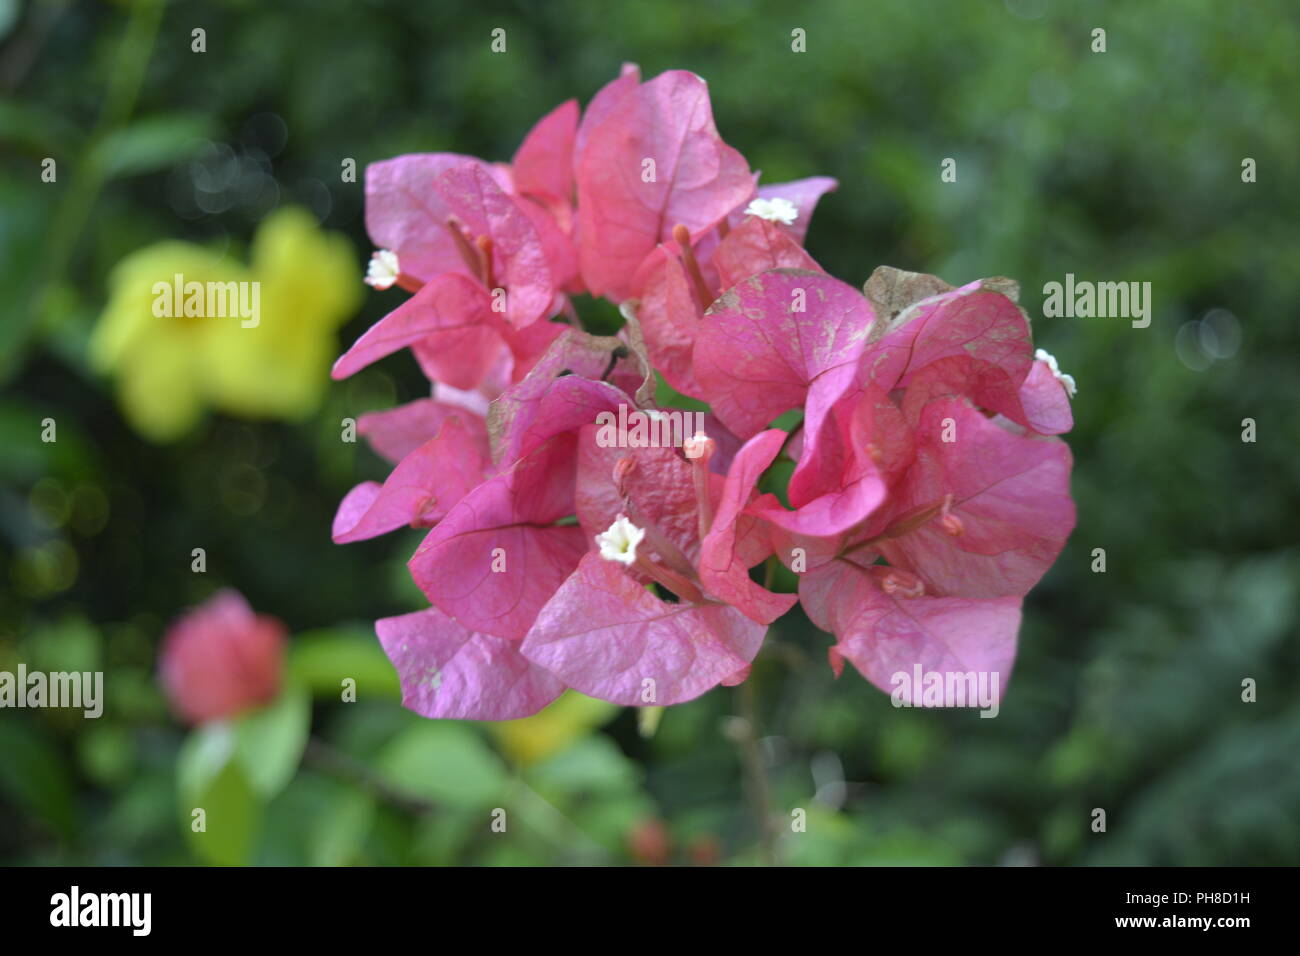 Pokok bunga kertas hi-res stock photography and images - Alamy